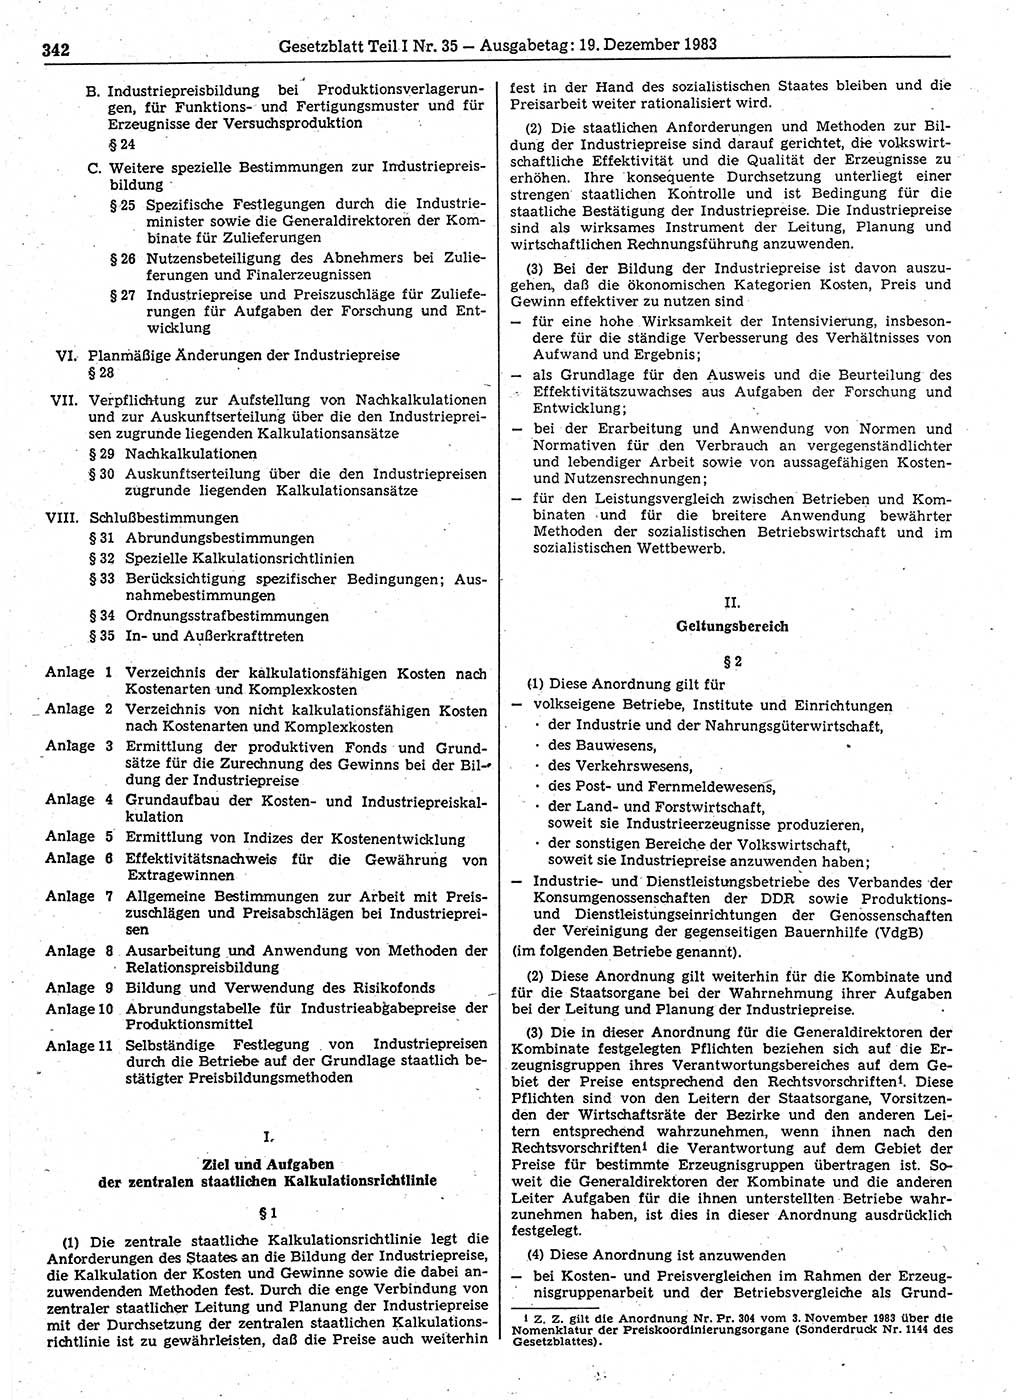 Gesetzblatt (GBl.) der Deutschen Demokratischen Republik (DDR) Teil Ⅰ 1983, Seite 342 (GBl. DDR Ⅰ 1983, S. 342)